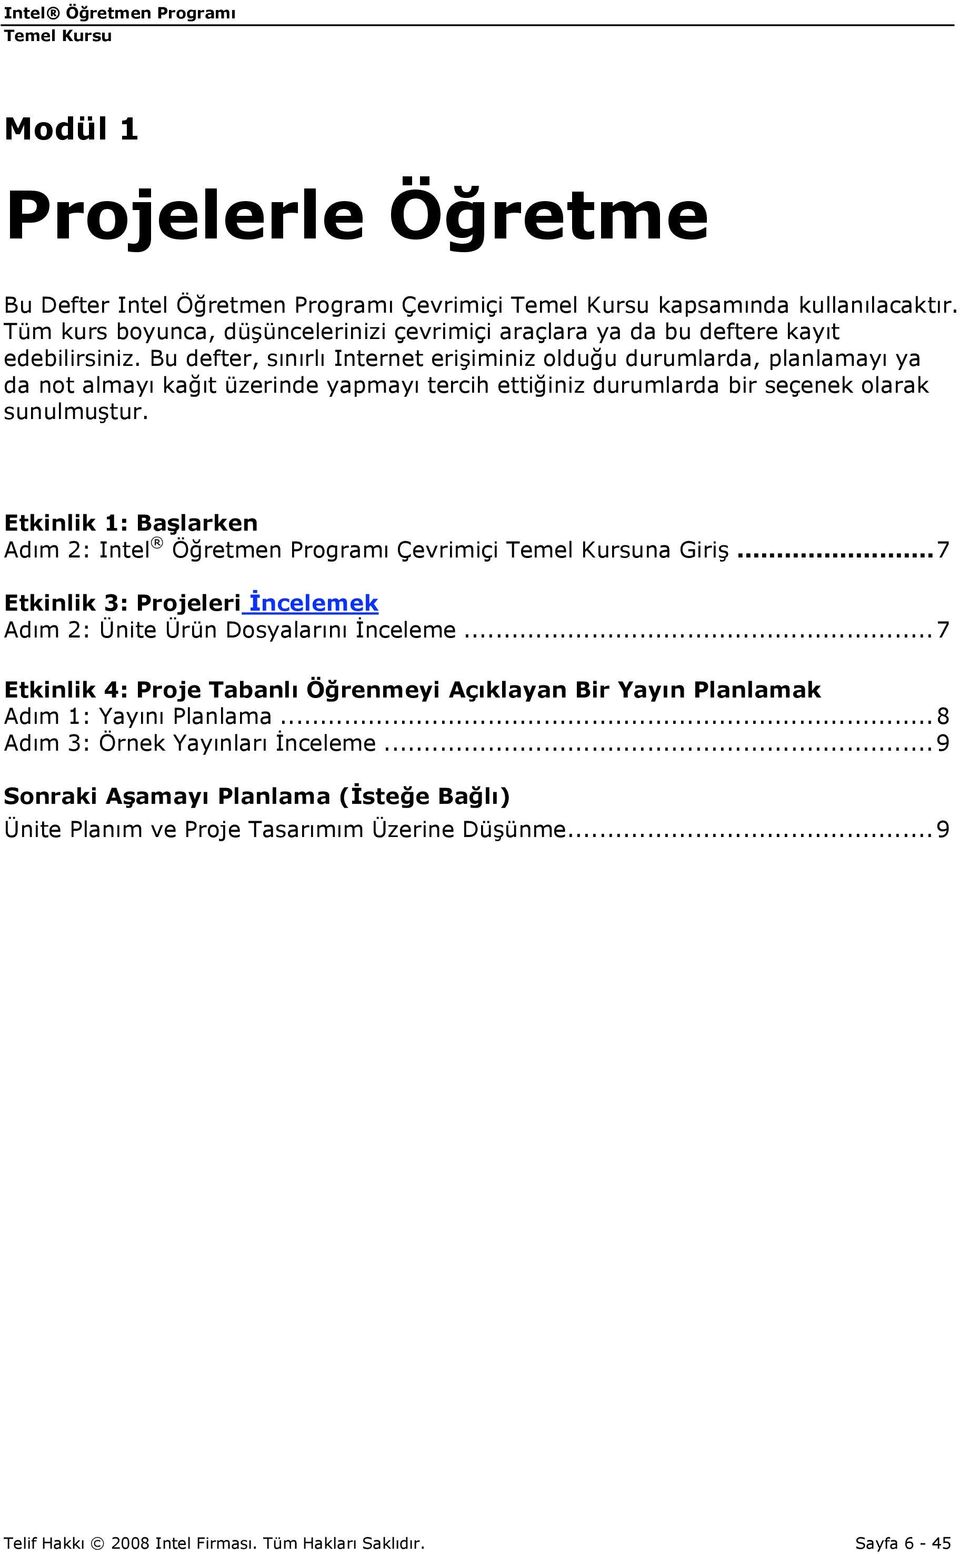 Etkinlik 1: Başlarken Adım 2: Intel Öğretmen Programı Çevrimiçi na Giriş...7 Etkinlik 3: Projeleri İncelemek Adım 2: Ünite Ürün Dosyalarını İnceleme.